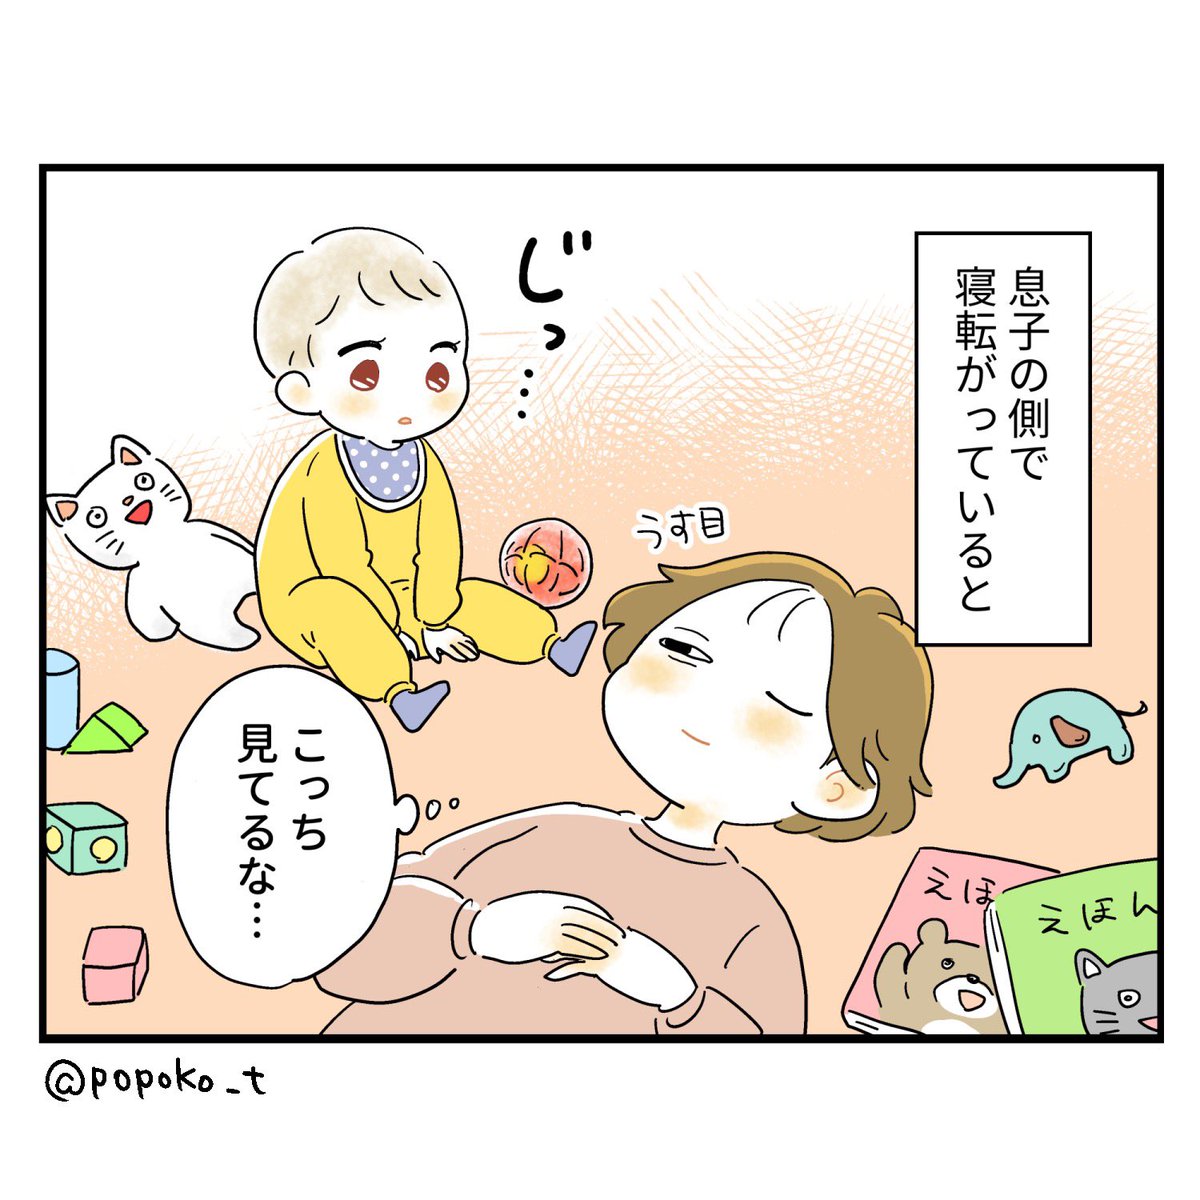 容赦なく降りかかるヨダレ

#育児漫画 #育児絵日記 